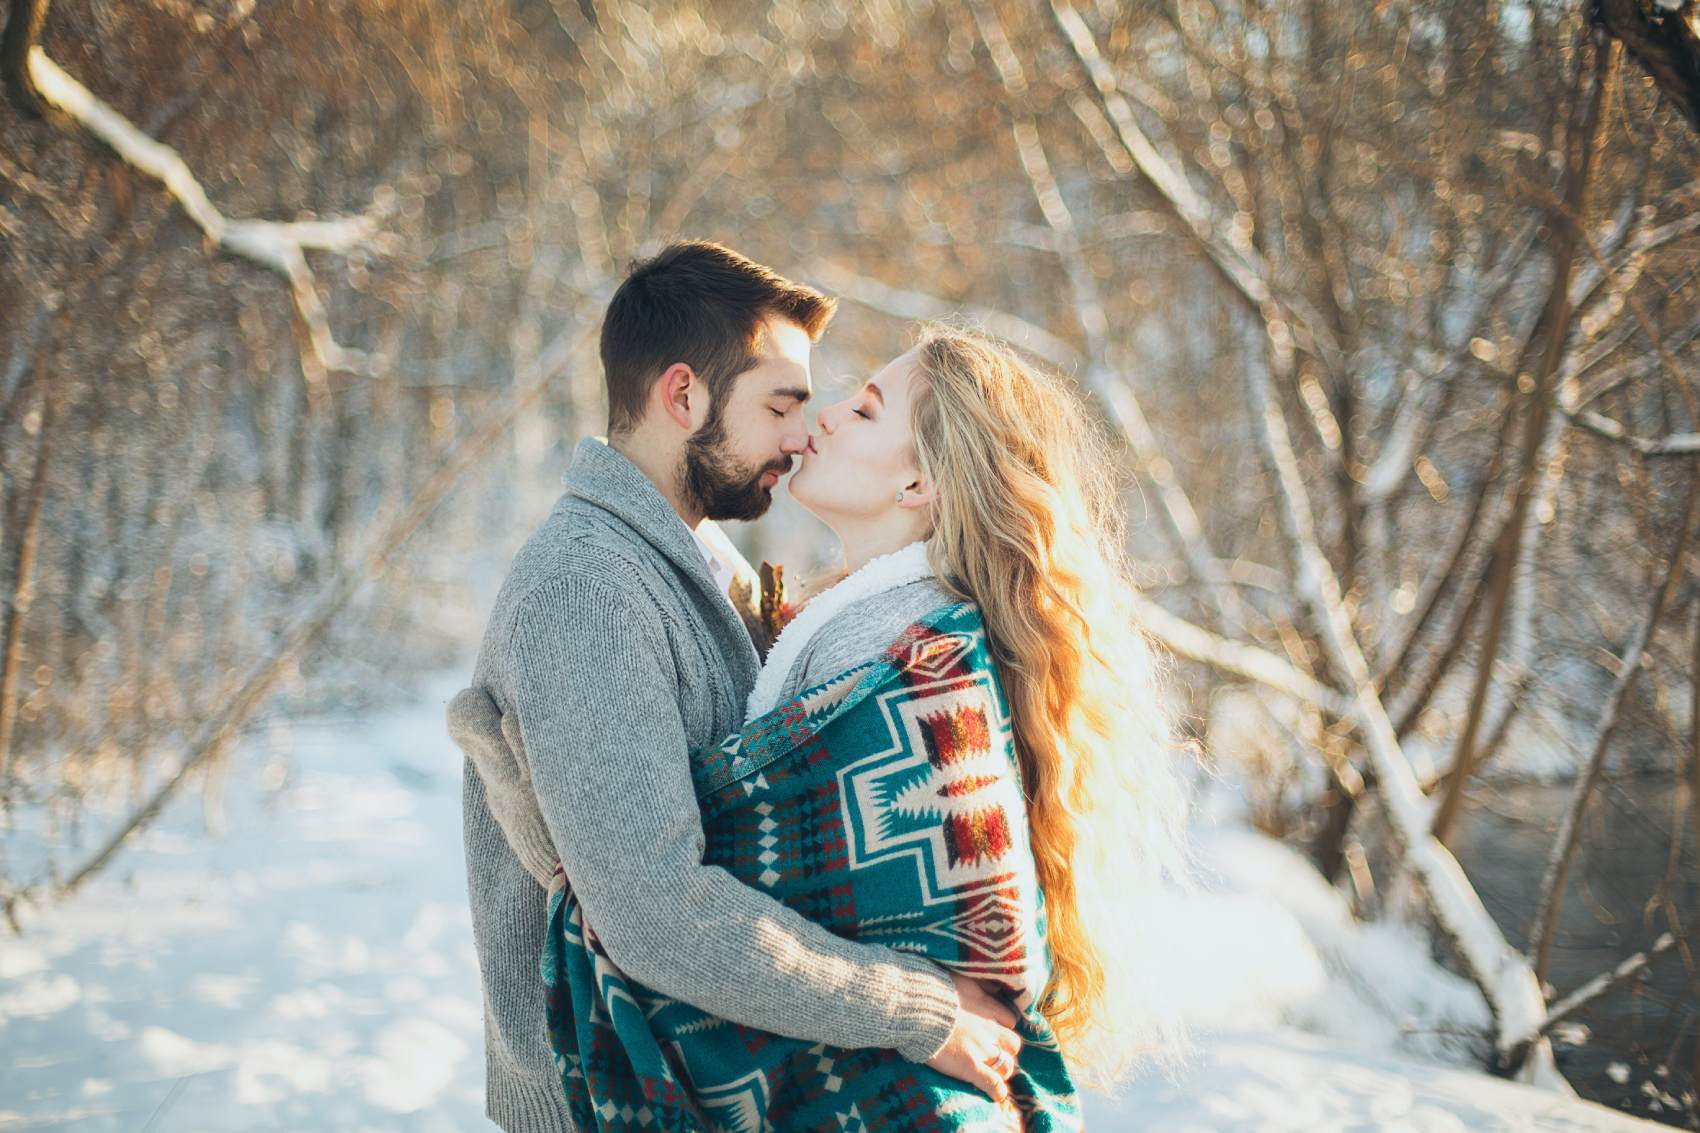 Ρομαντική απόδραση: Οι χειμερινοί προορισμοί για ζευγάρια που θα λατρέψετε